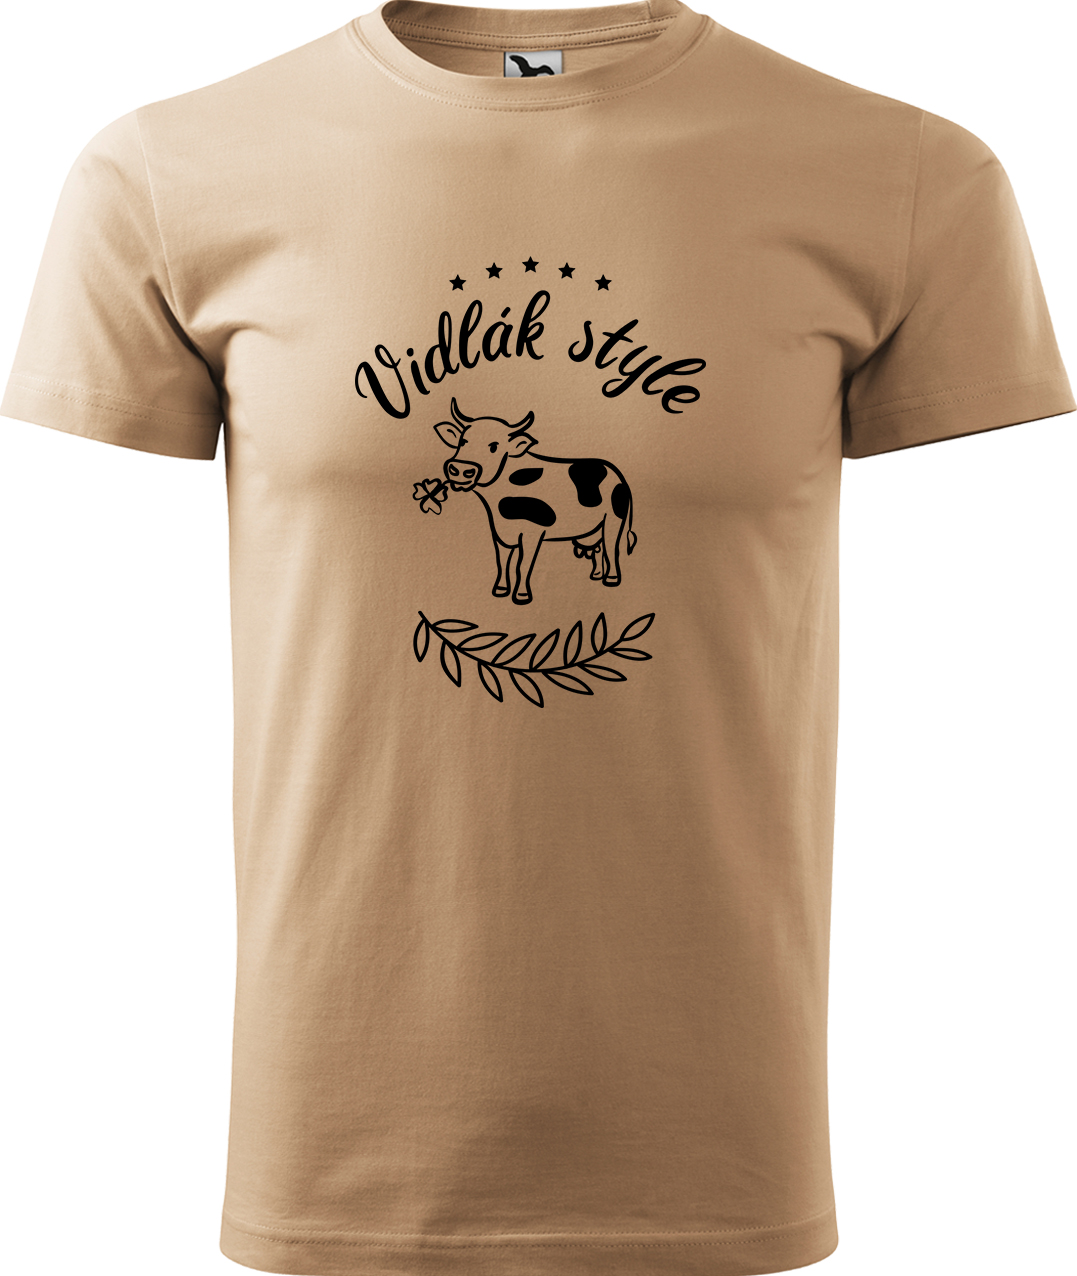 Pánské tričko s krávou - Vidlák style Velikost: M, Barva: Písková (08), Střih: pánský